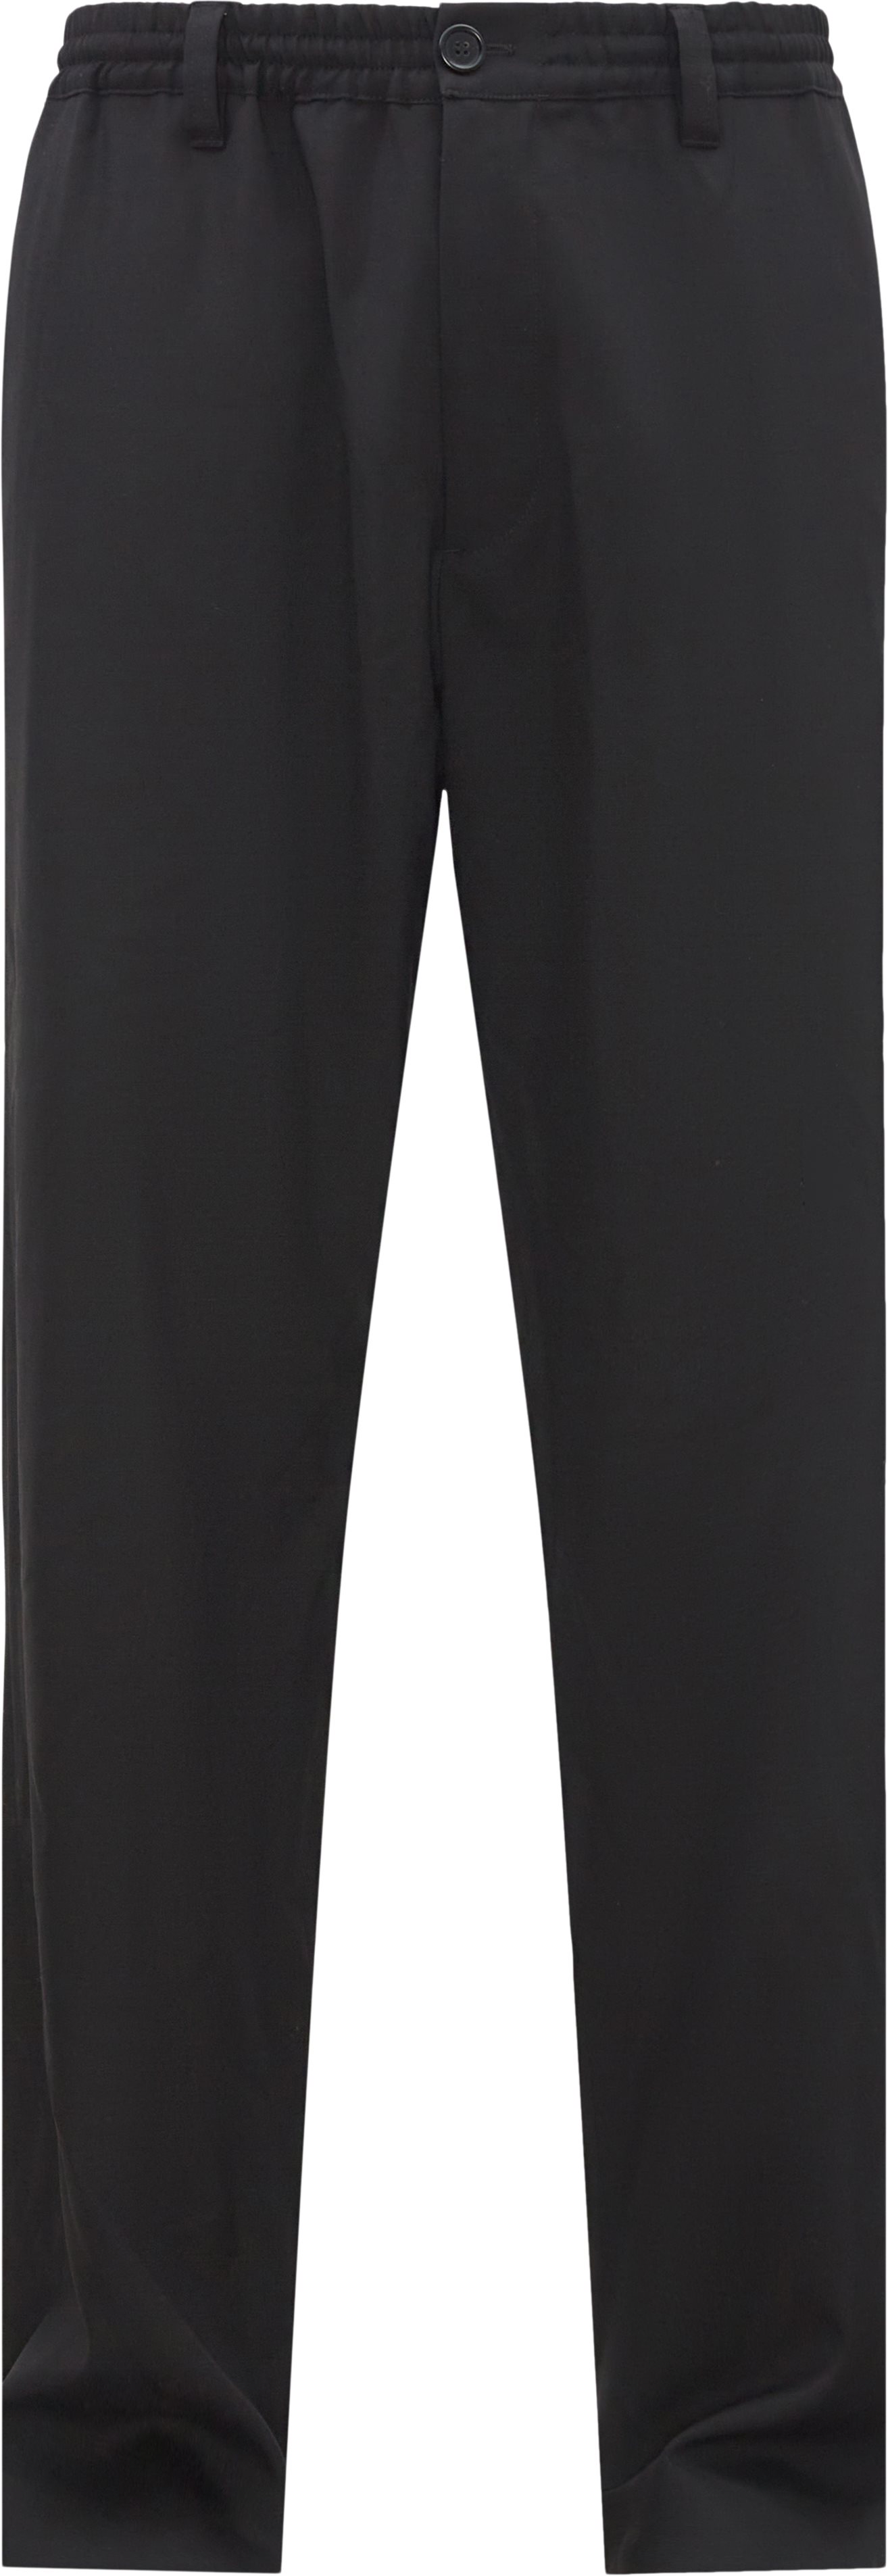 Marni Trousers PUMU0156U1 TW839 Black